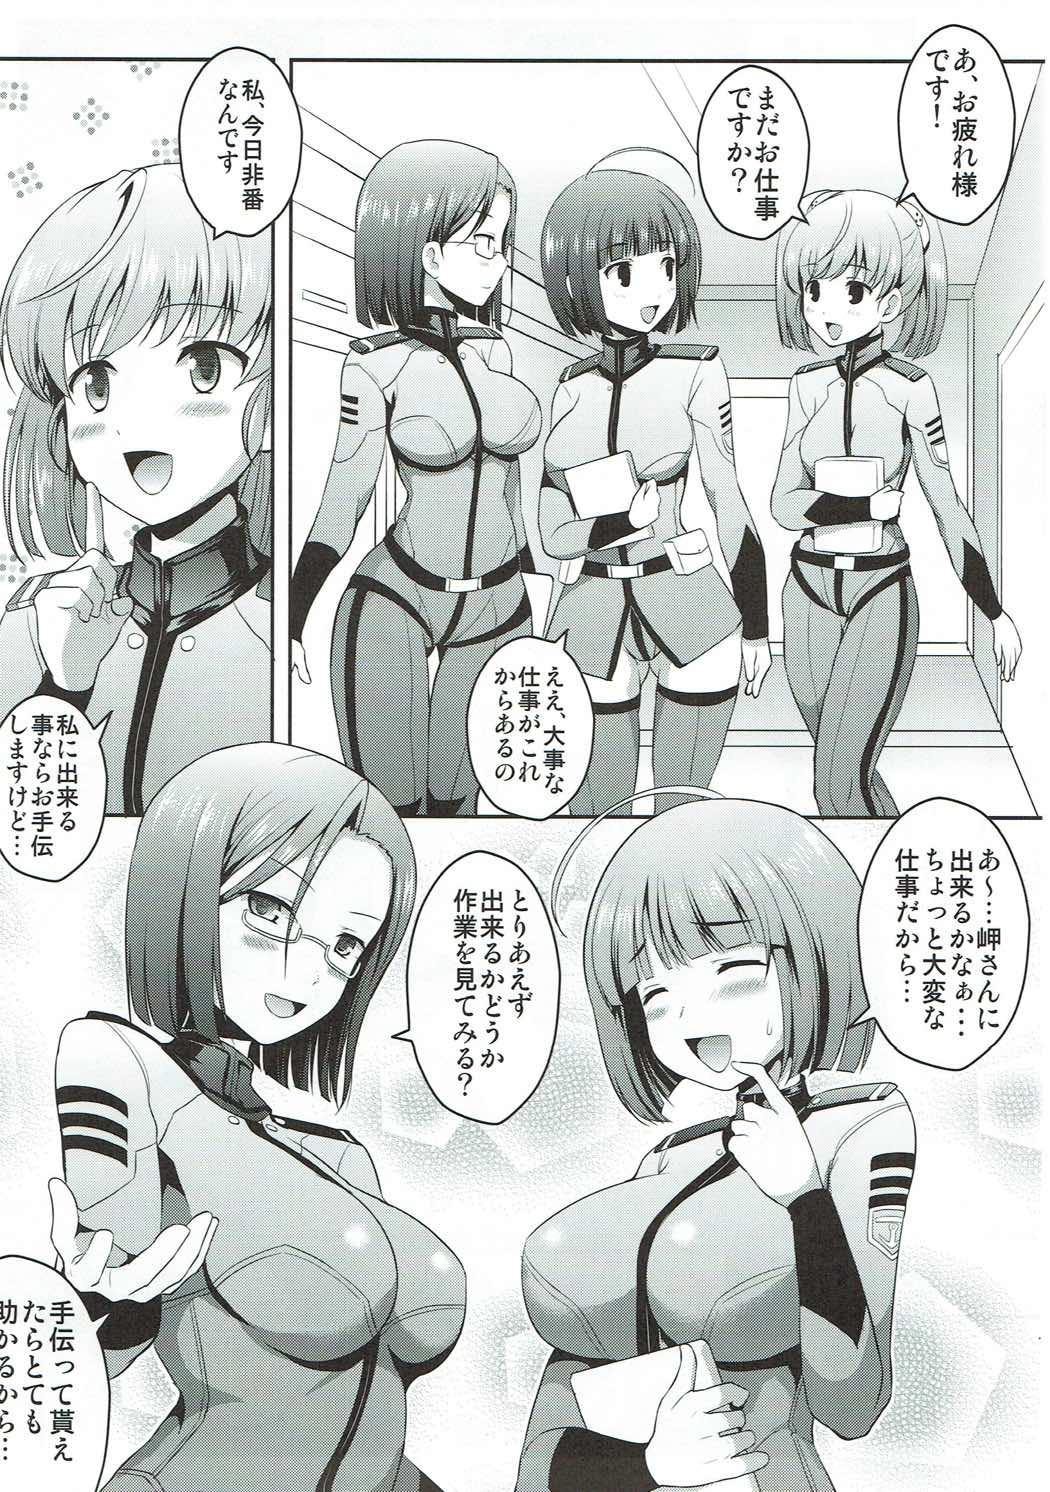 Head Uchuu Senkan Yamato Sei Shori ka - Space battleship yamato Tamil - Page 6